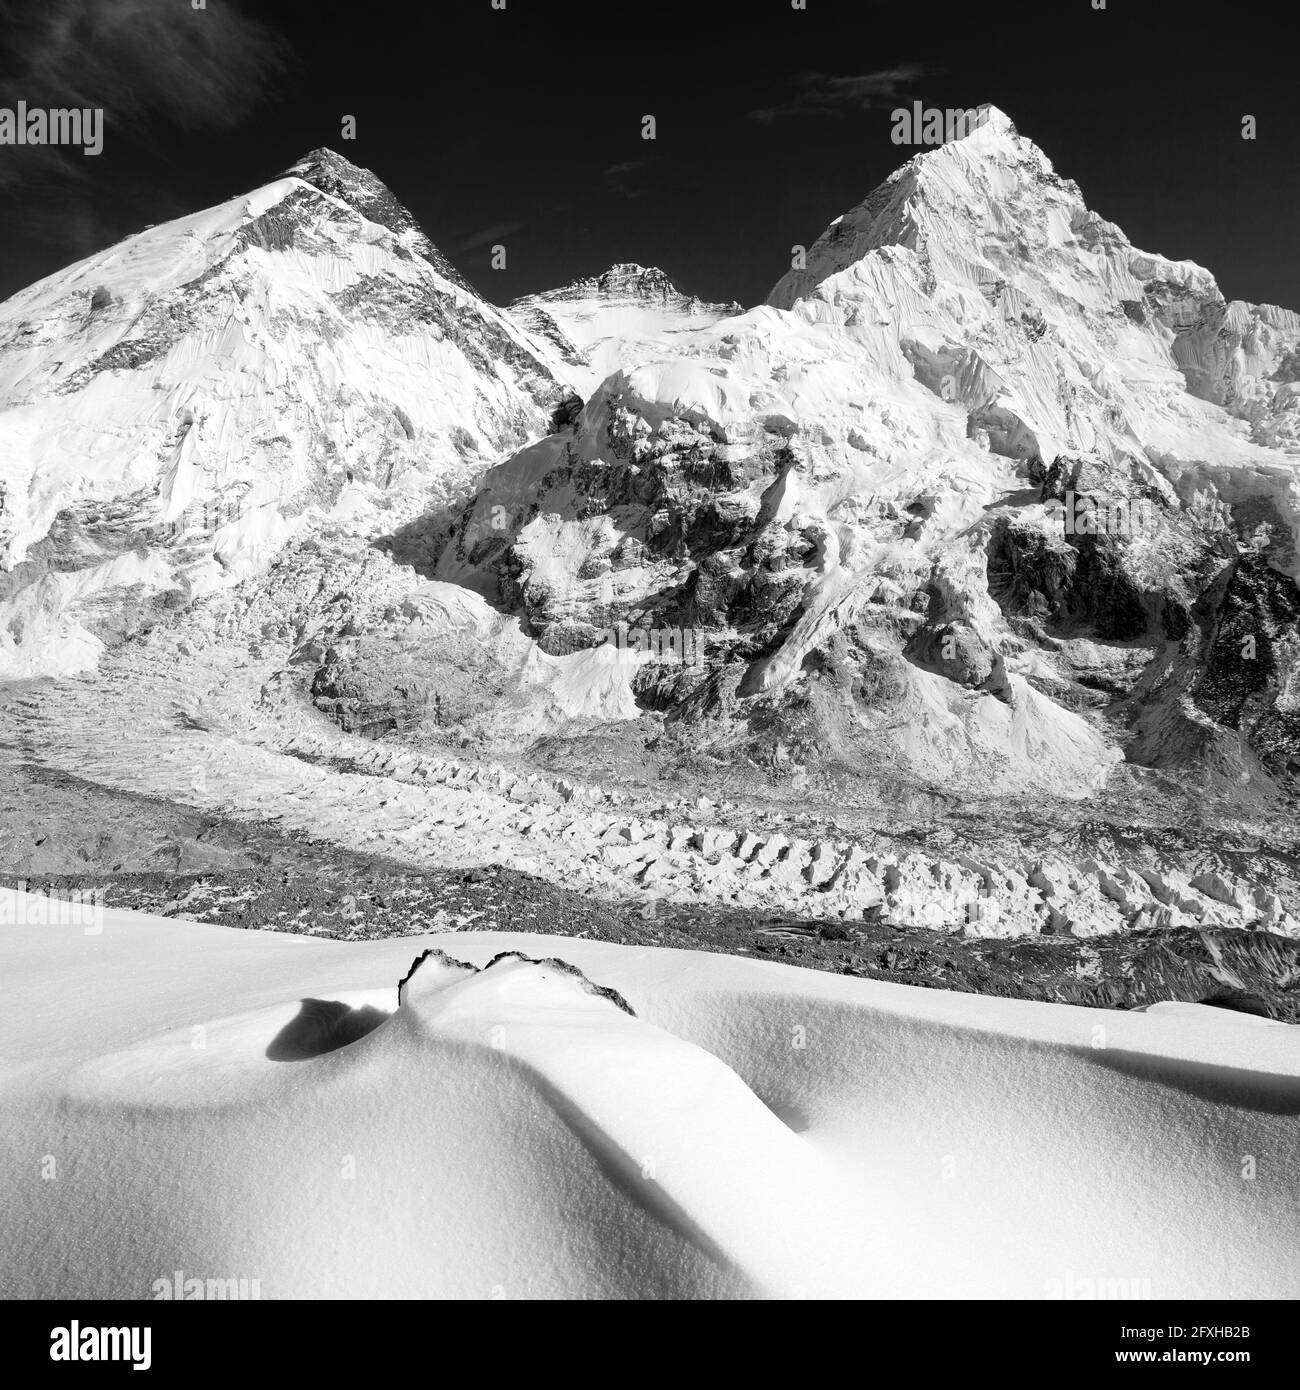 Vista del Monte Everest, Lhotse y Nuptse desde el campamento base de Pumo Ri, camino al campamento base del Monte Everest, el parque nacional de Sagarmatha, las montañas del Himalaya de Nepal, Foto de stock